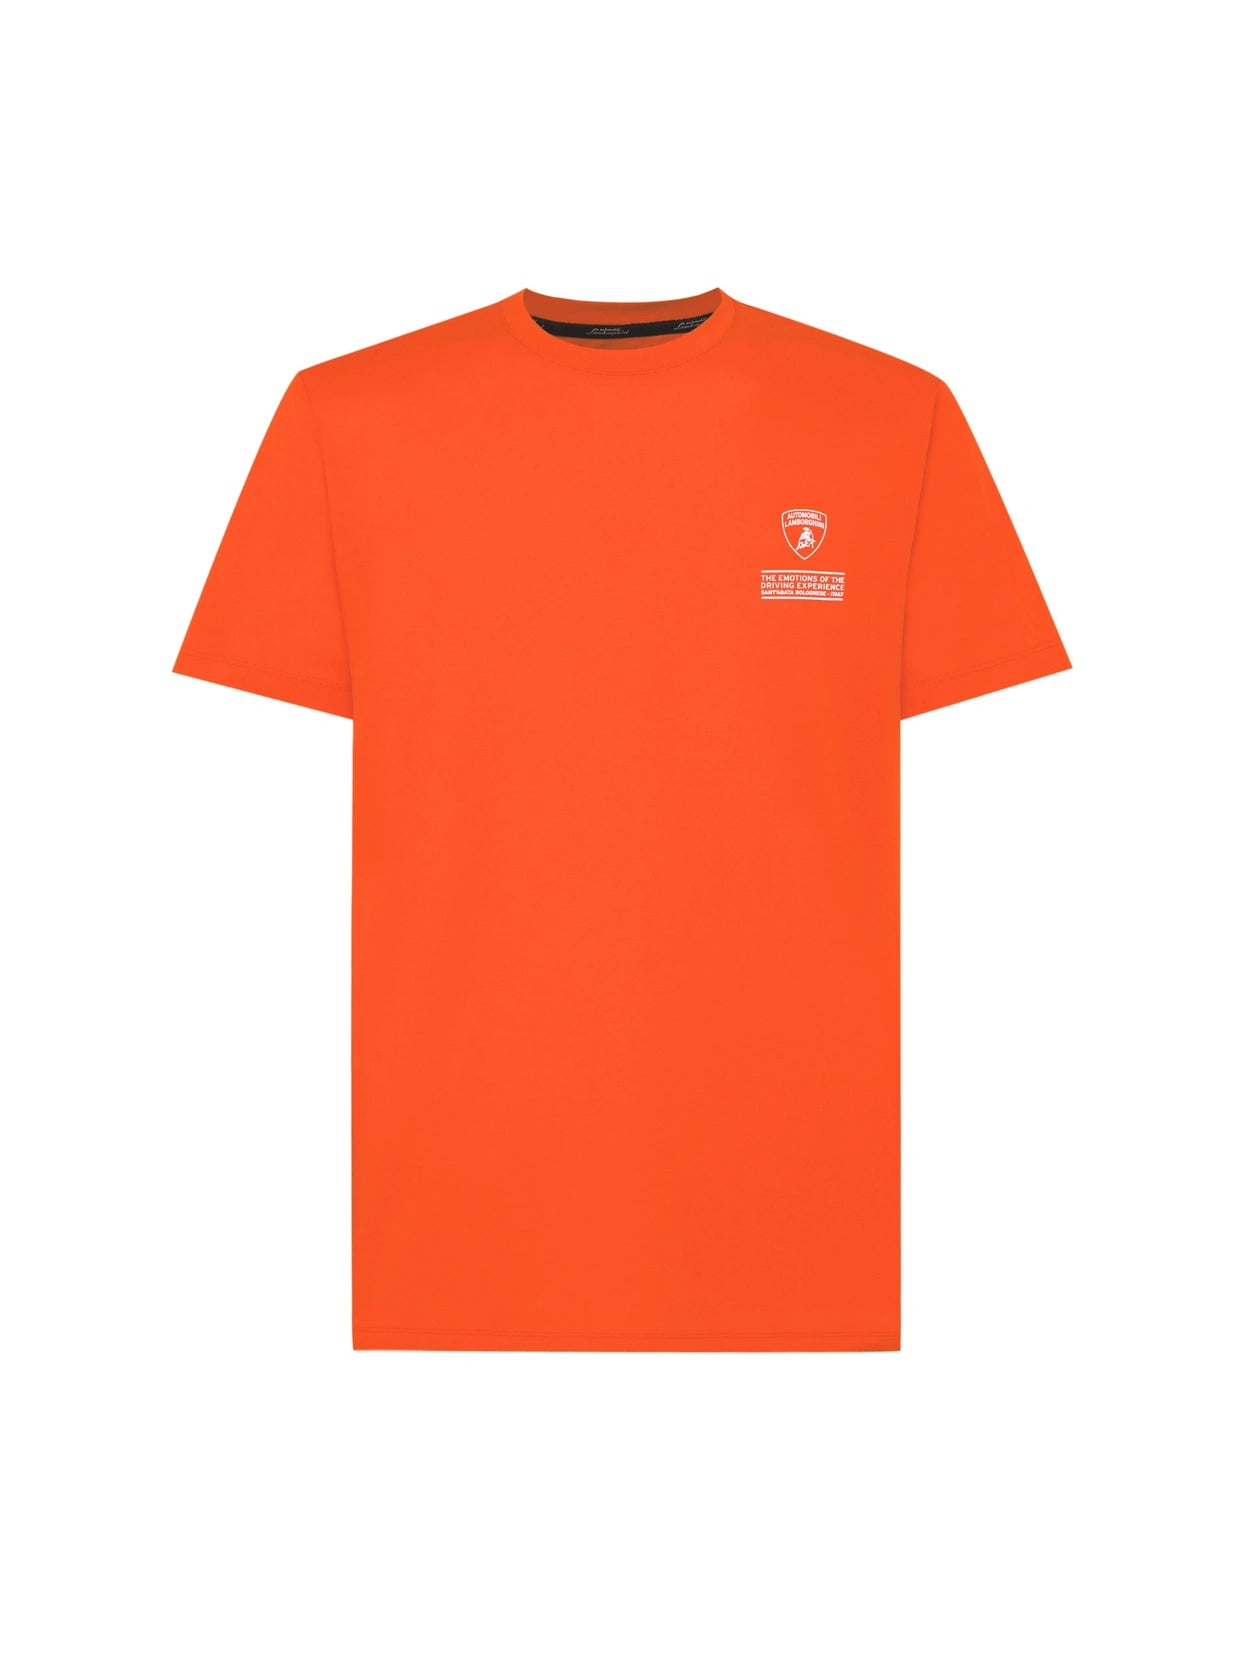 T-Shirt Automobili Lamborghini con Logo / Arancione - Ideal Moda